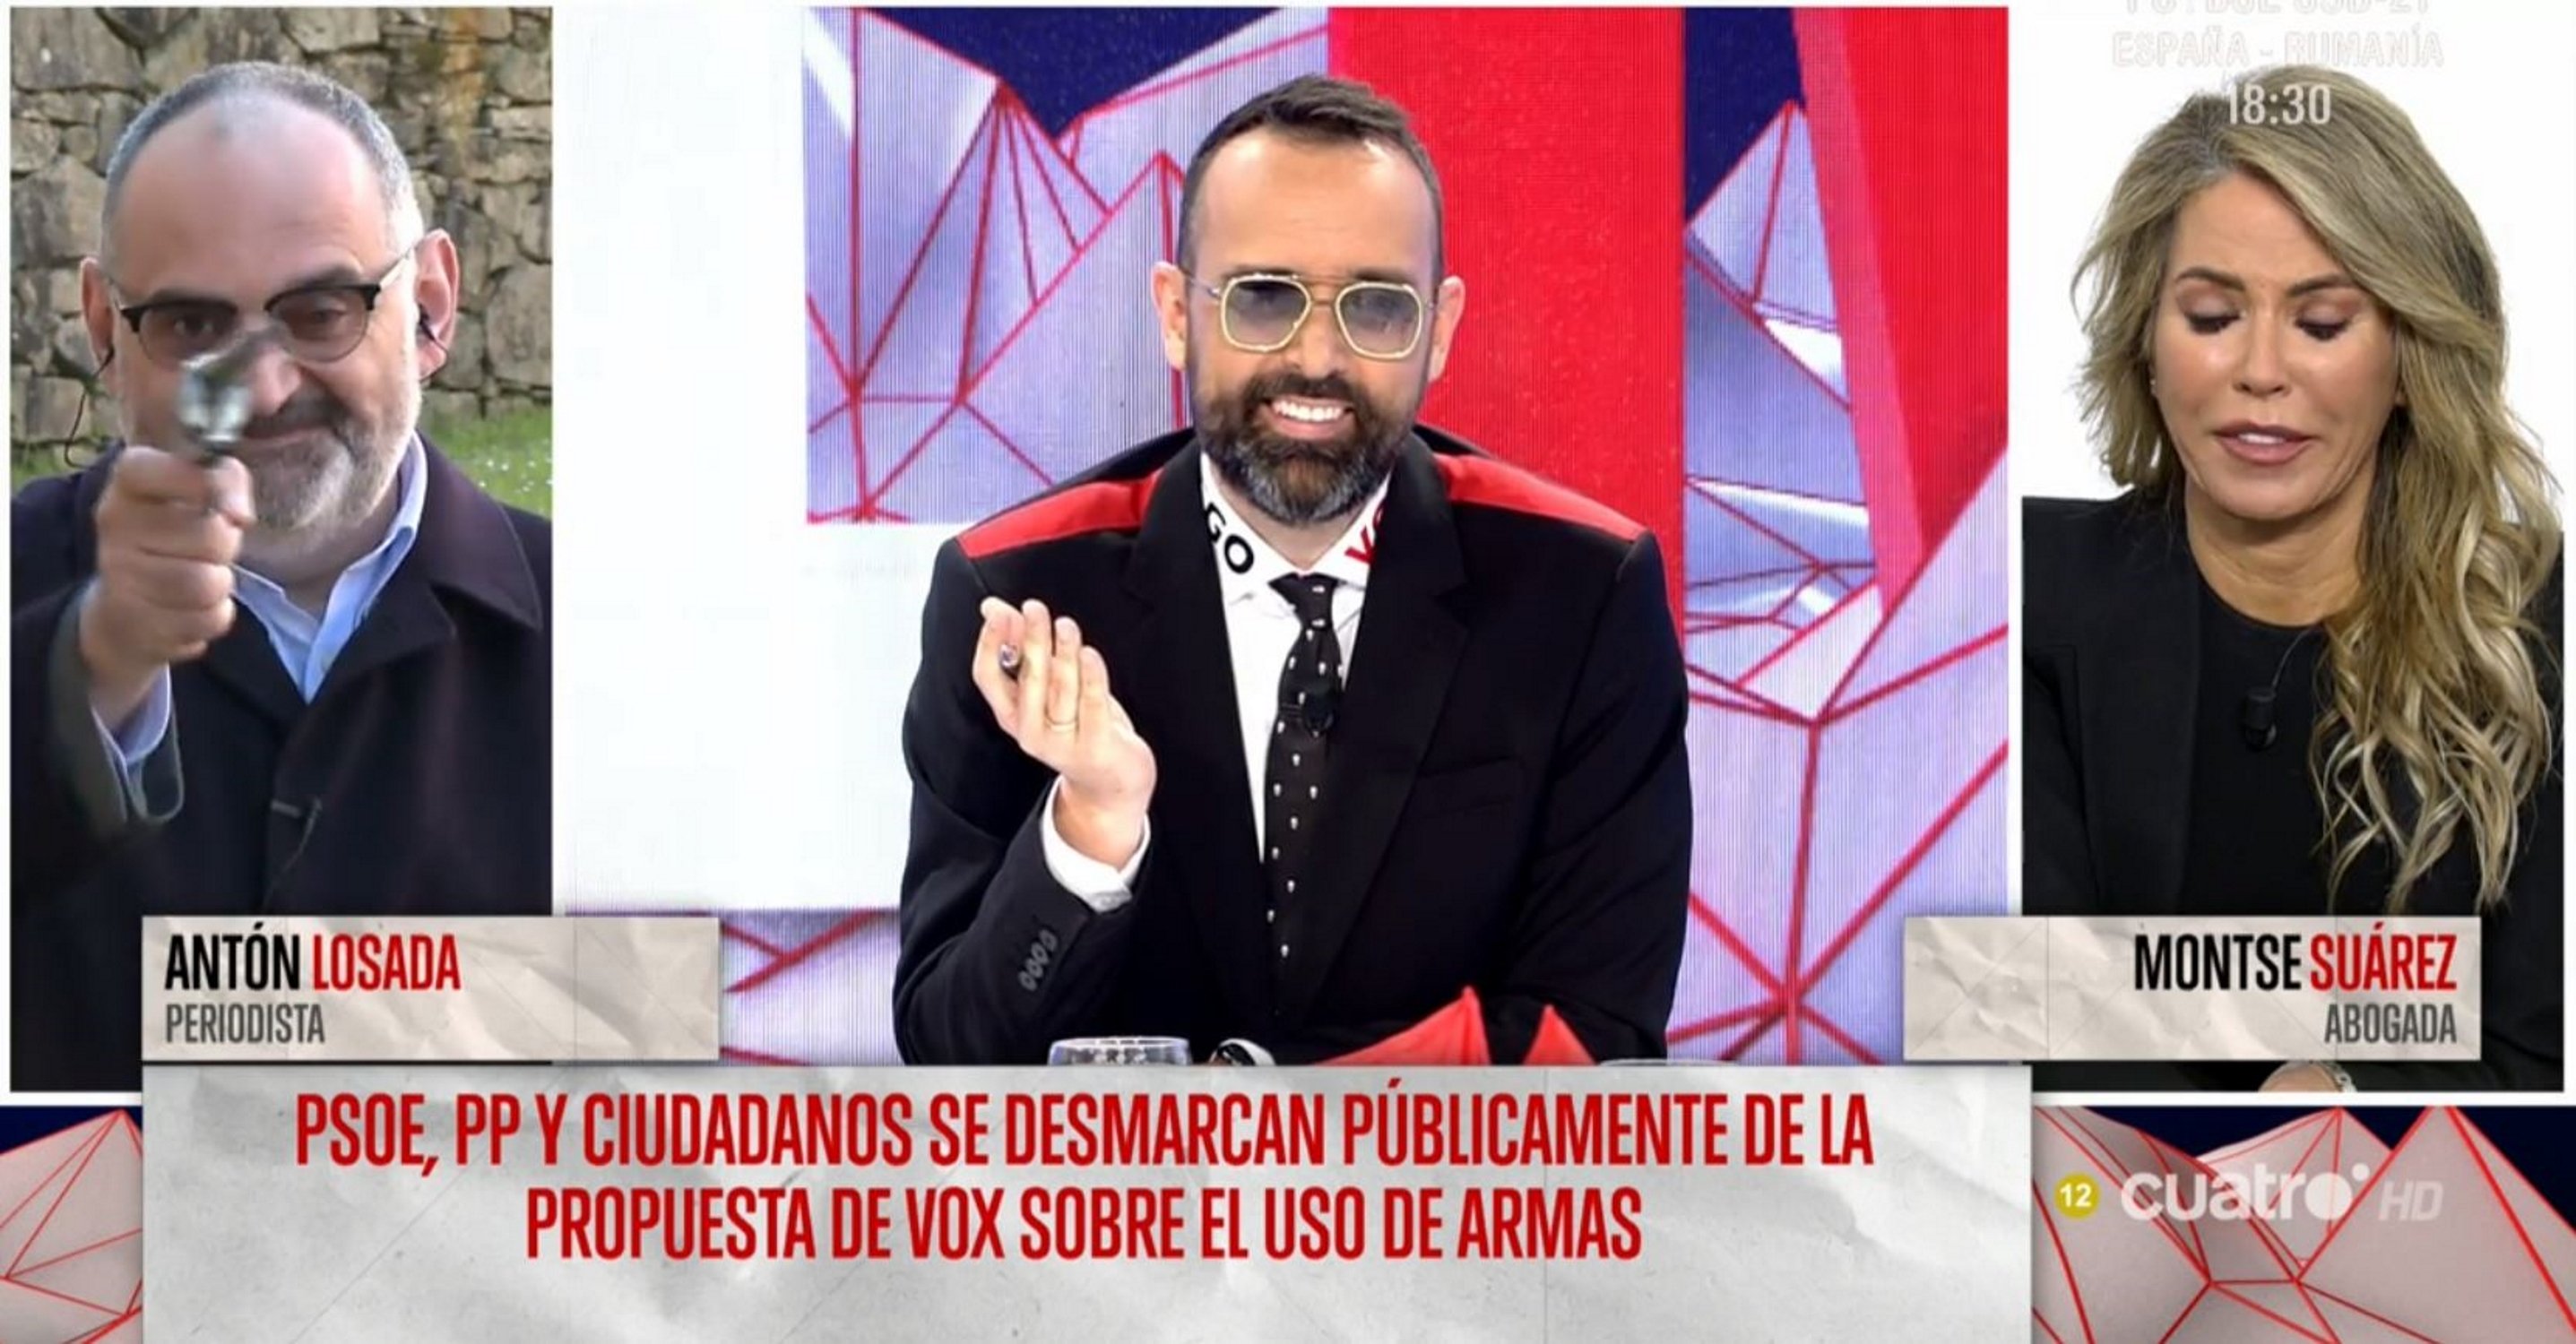 Antón Losada saca "un arma" y replica la propuesta de Vox: "Caralladas"